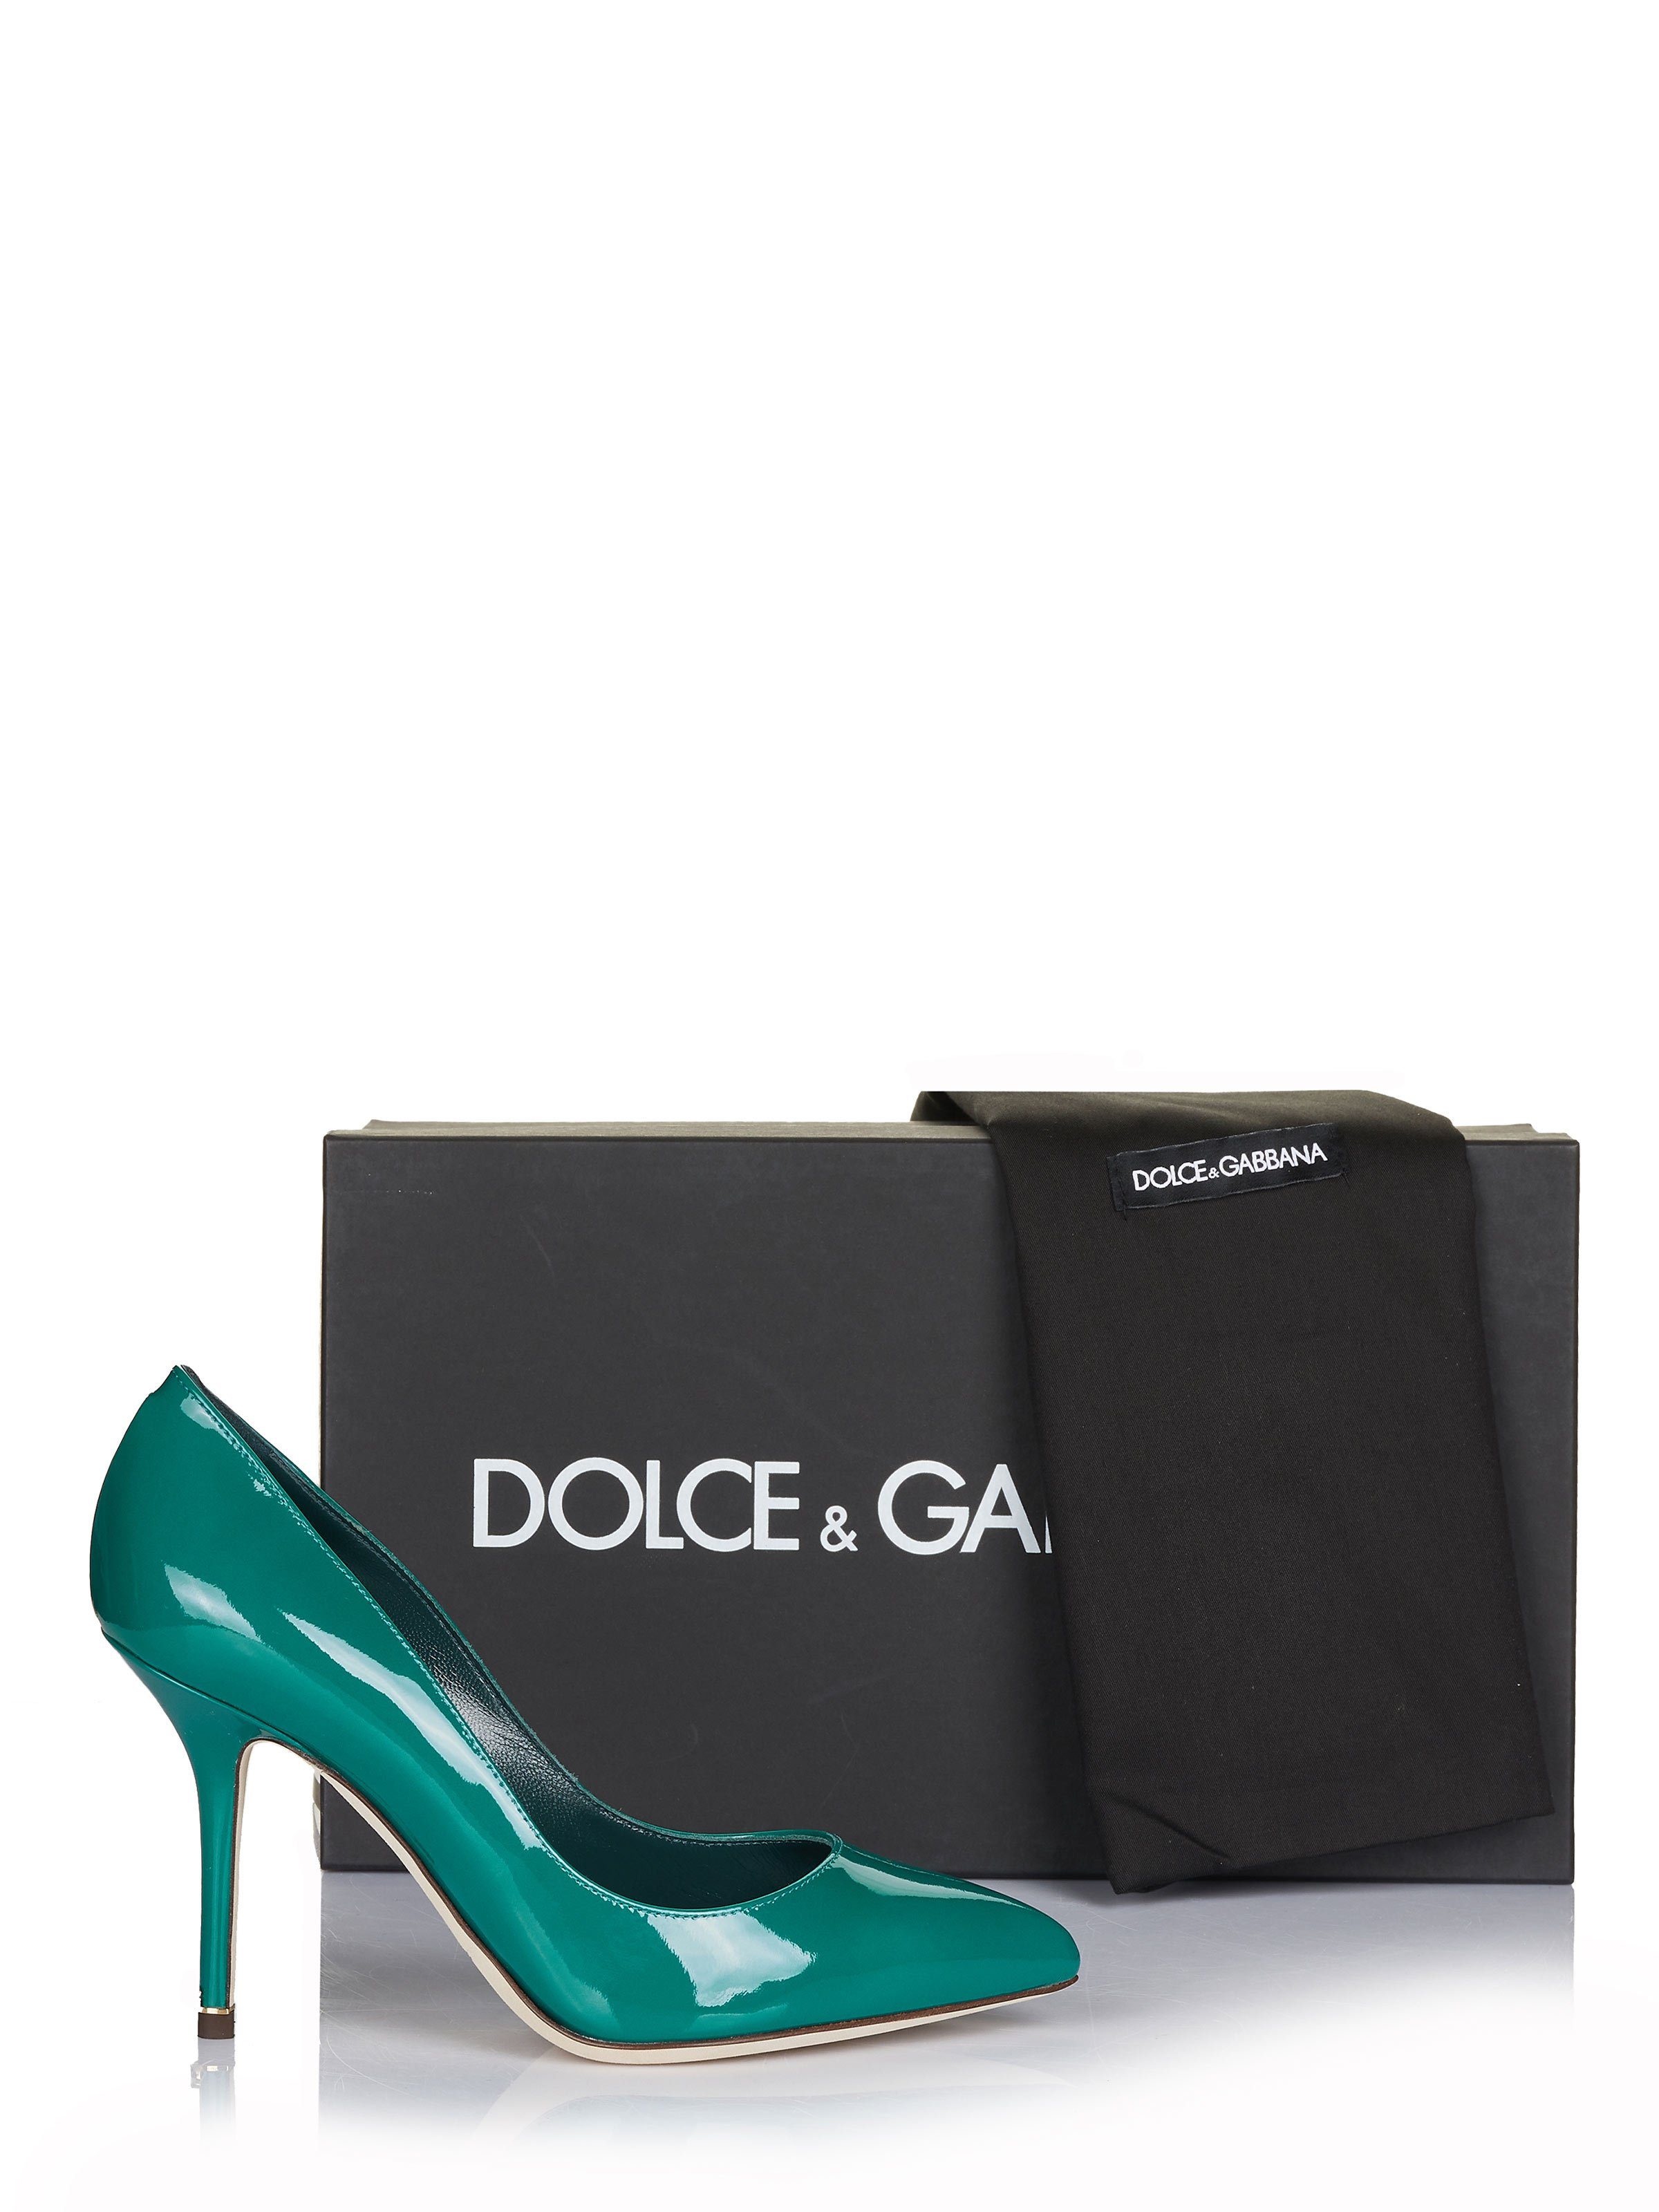 & Dolce GABBANA DOLCE Schuhe & Pumps Gabbana